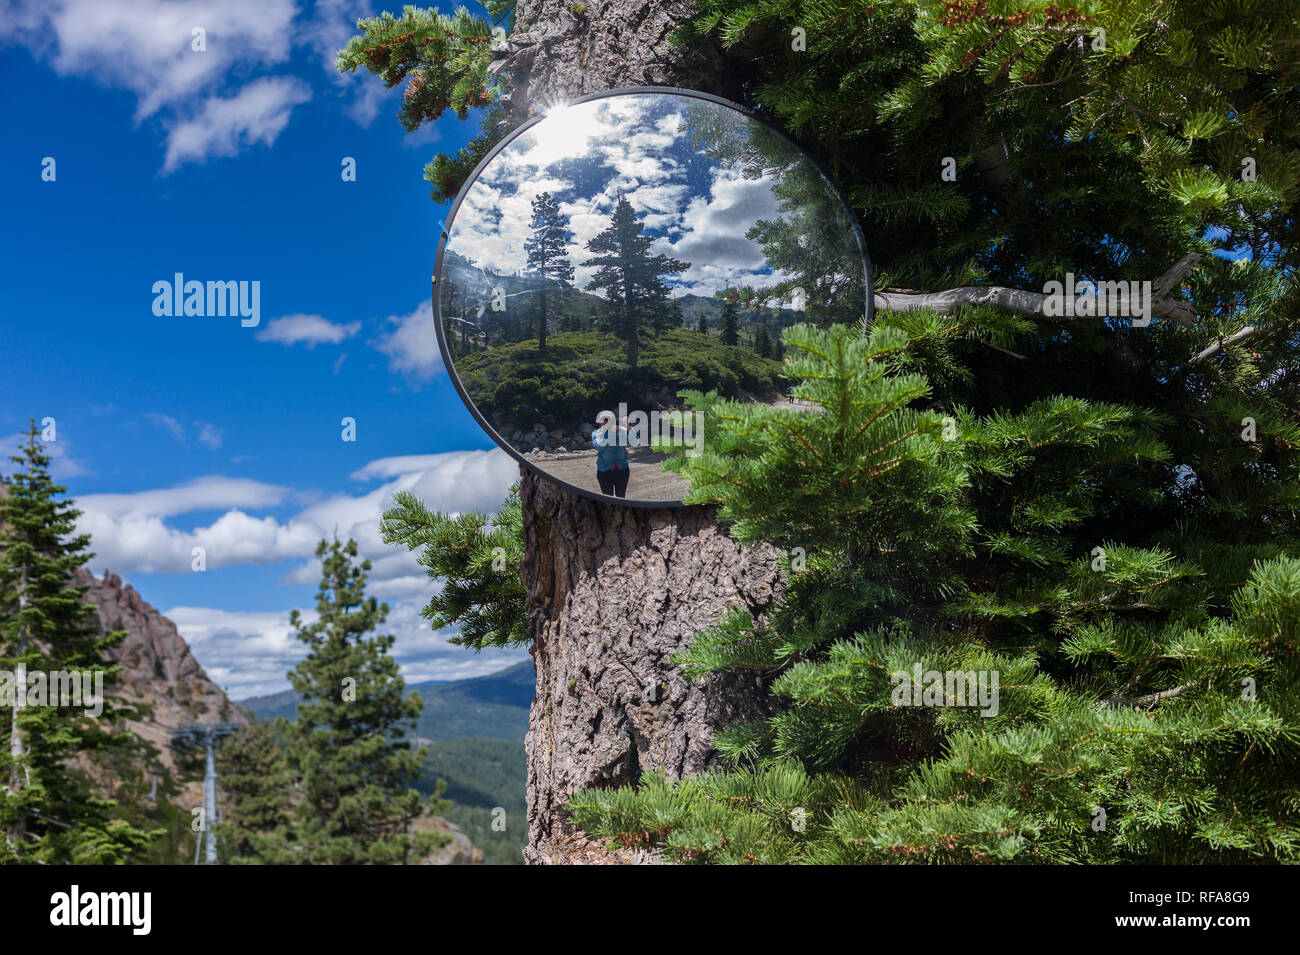 Squaw Valley è una stazione sciistica vicino al lago Tahoe in Olympic Valley, California che è aperto per escursionismo in estate. Foto Stock